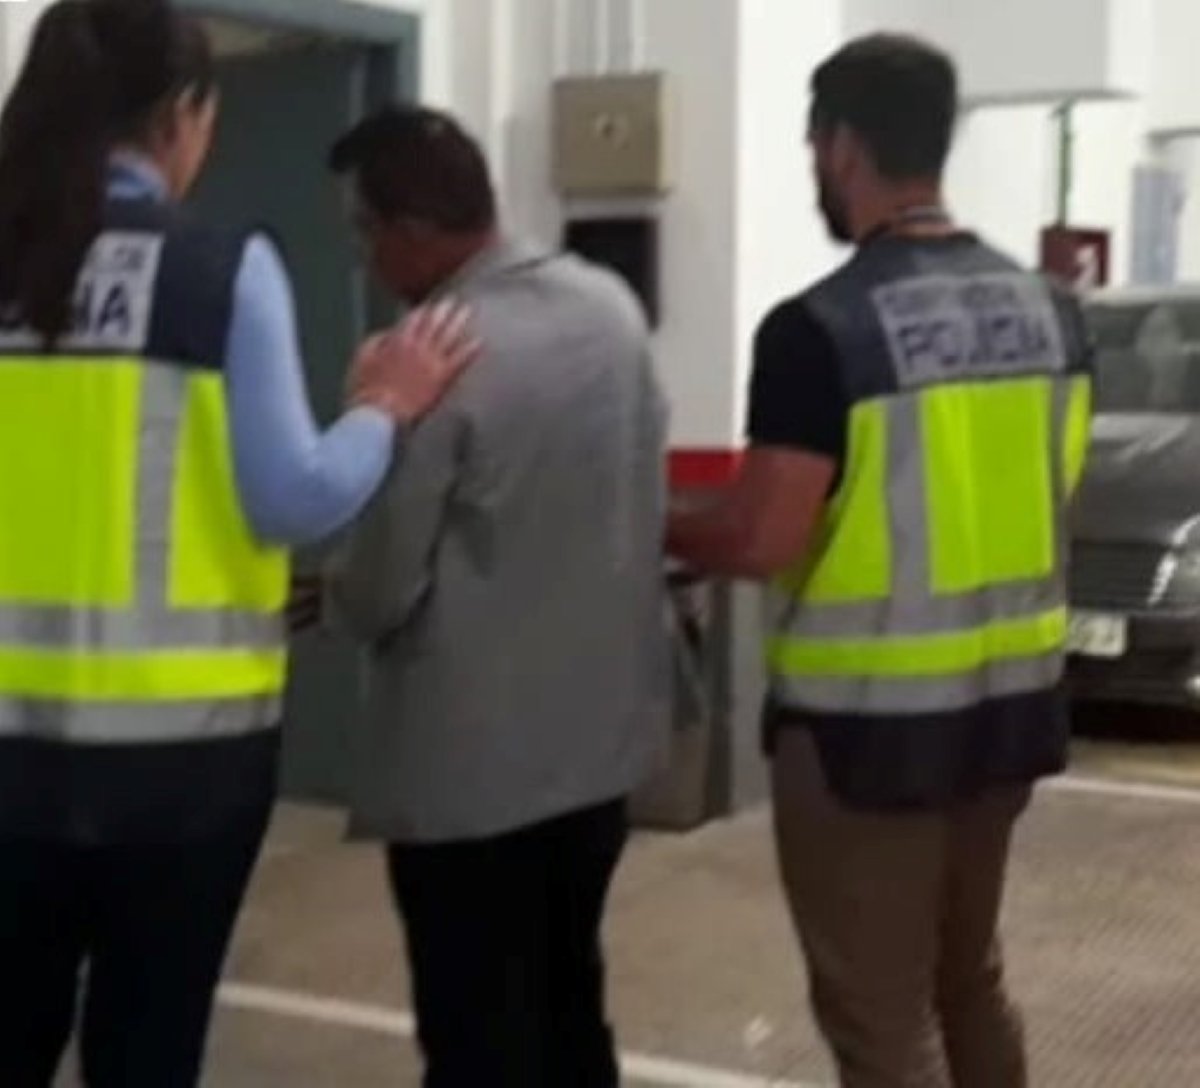 Dos agents de la Policia Nacional s'emporten arrestat el perrilós fugitiu reclamat per Colòmbia / CNP